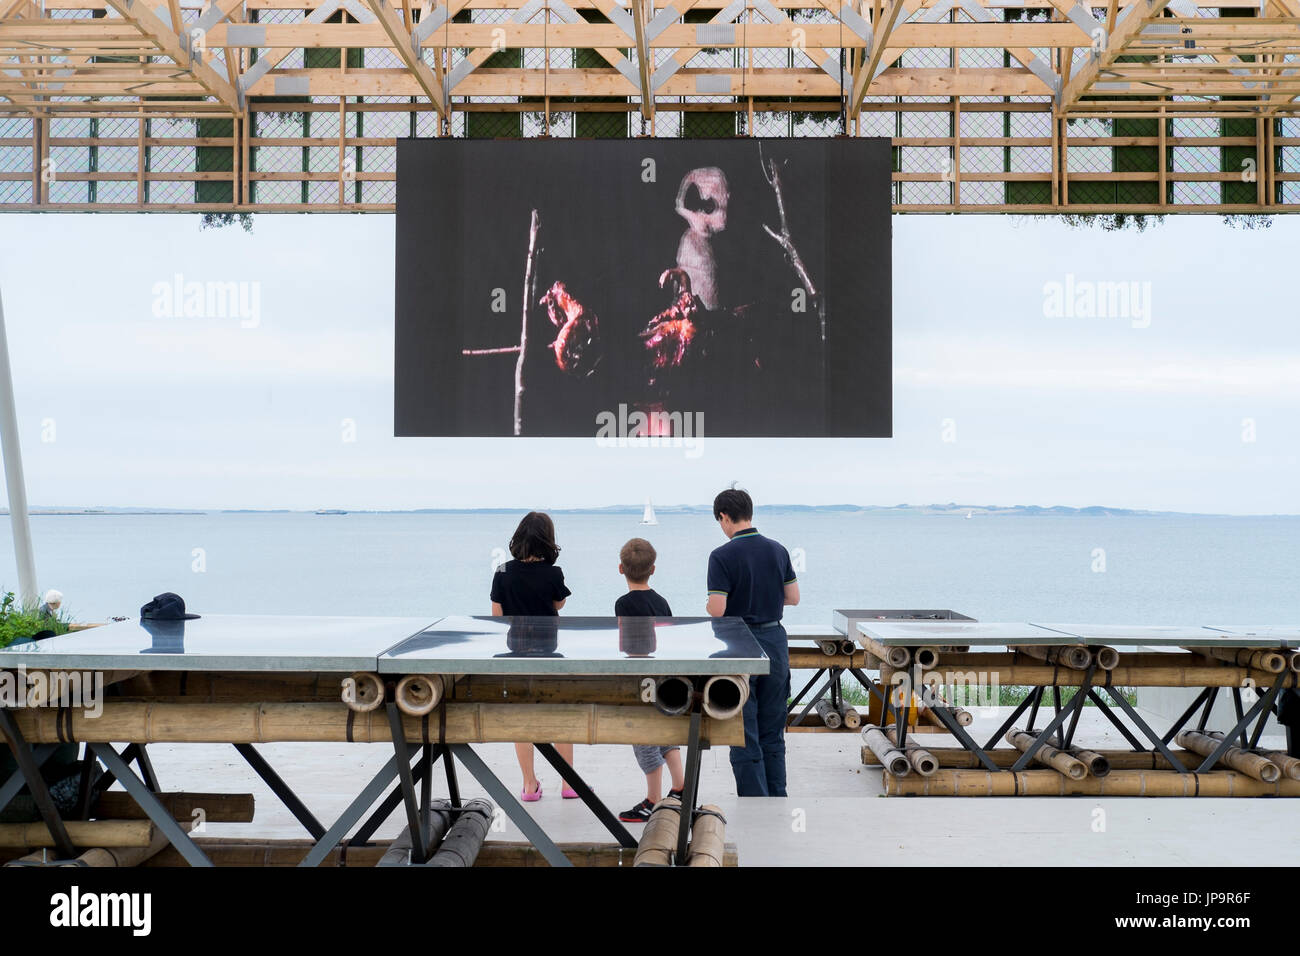 Le jardin de l'avenir des installations d'art le long du littoral d'Aarhus - Danemark Capitale Européenne de la Culture 2017 Banque D'Images